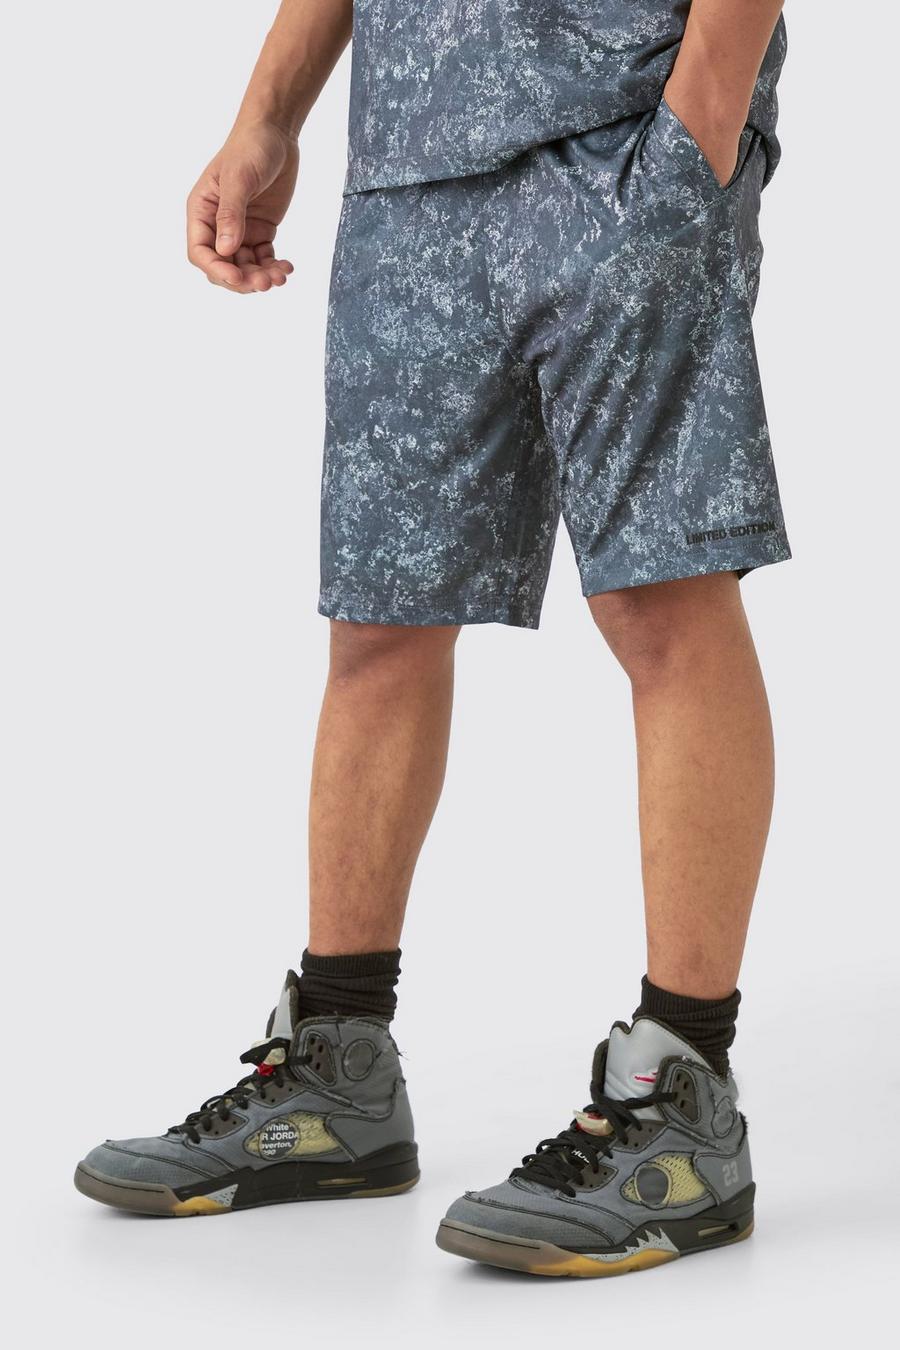 Pantalón corto de baloncesto con estampado de cemento, Charcoal